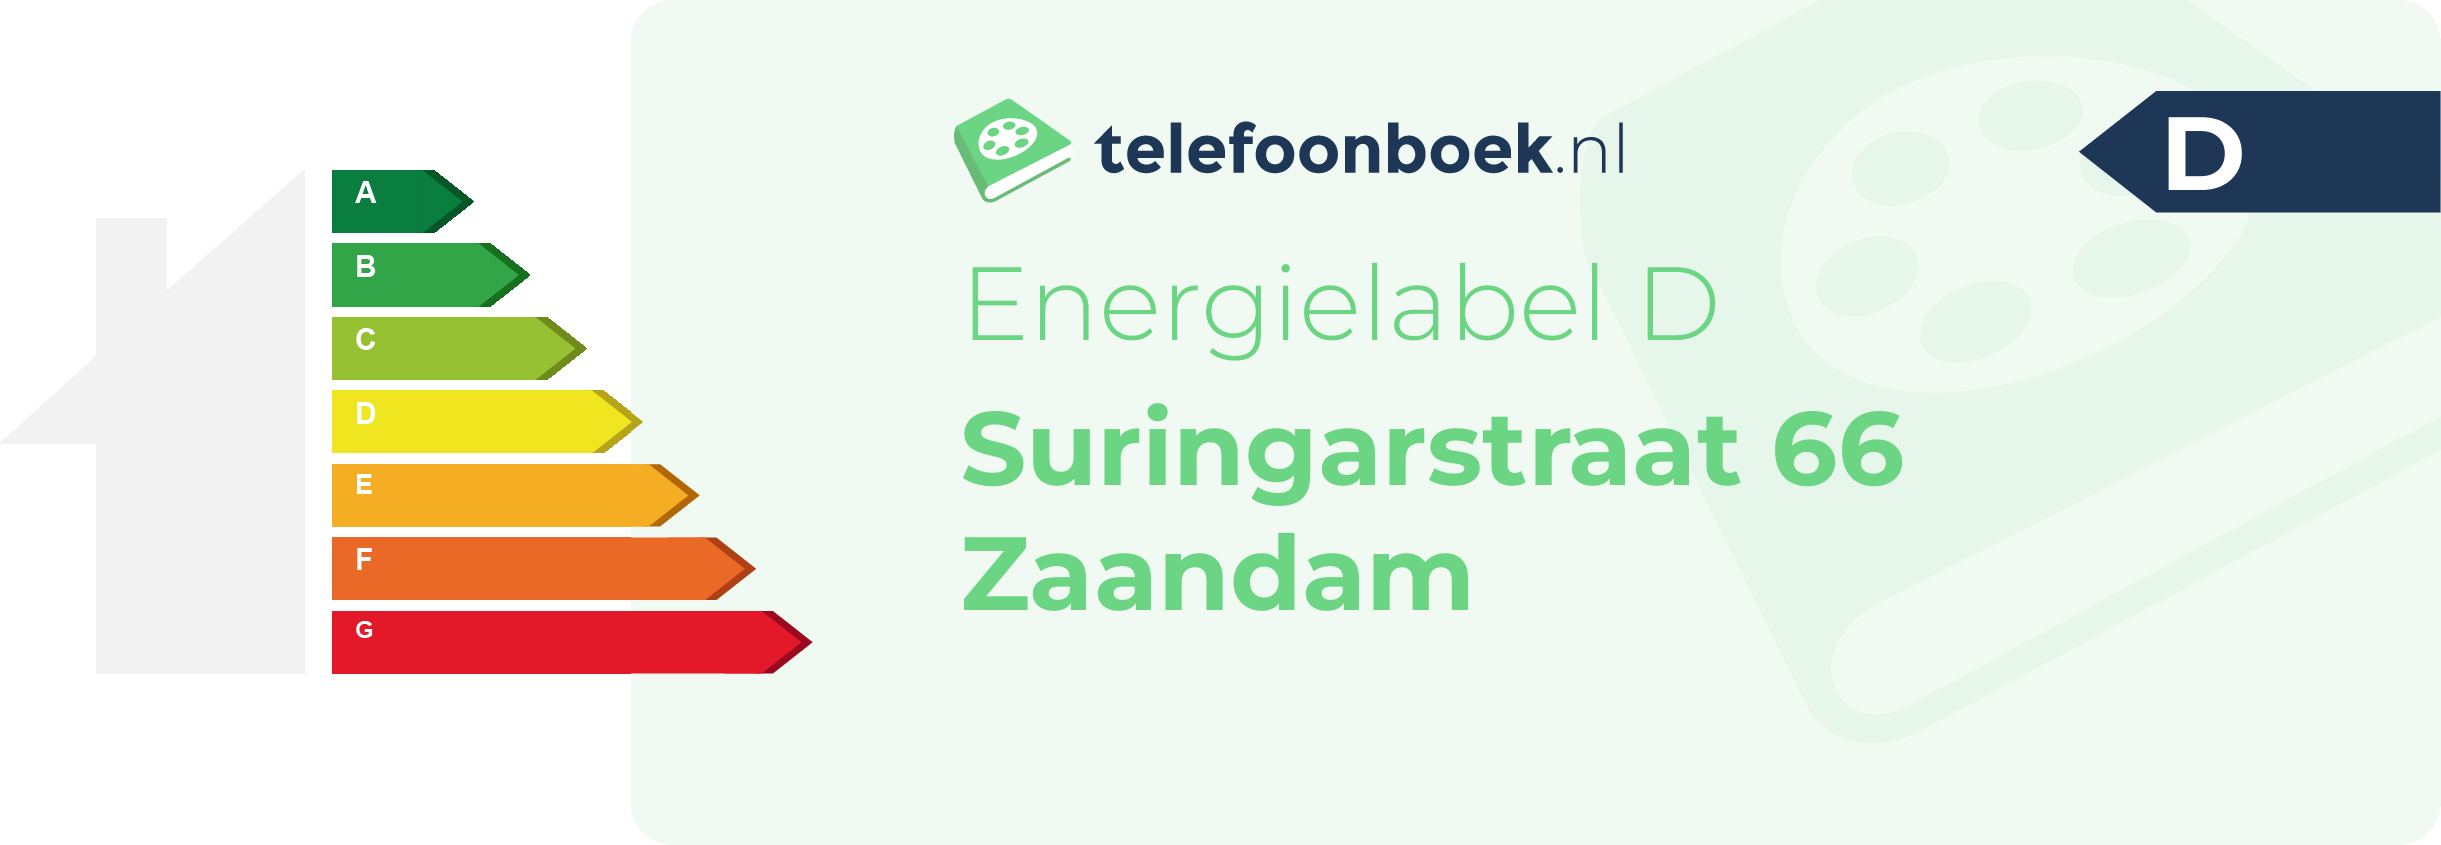 Energielabel Suringarstraat 66 Zaandam